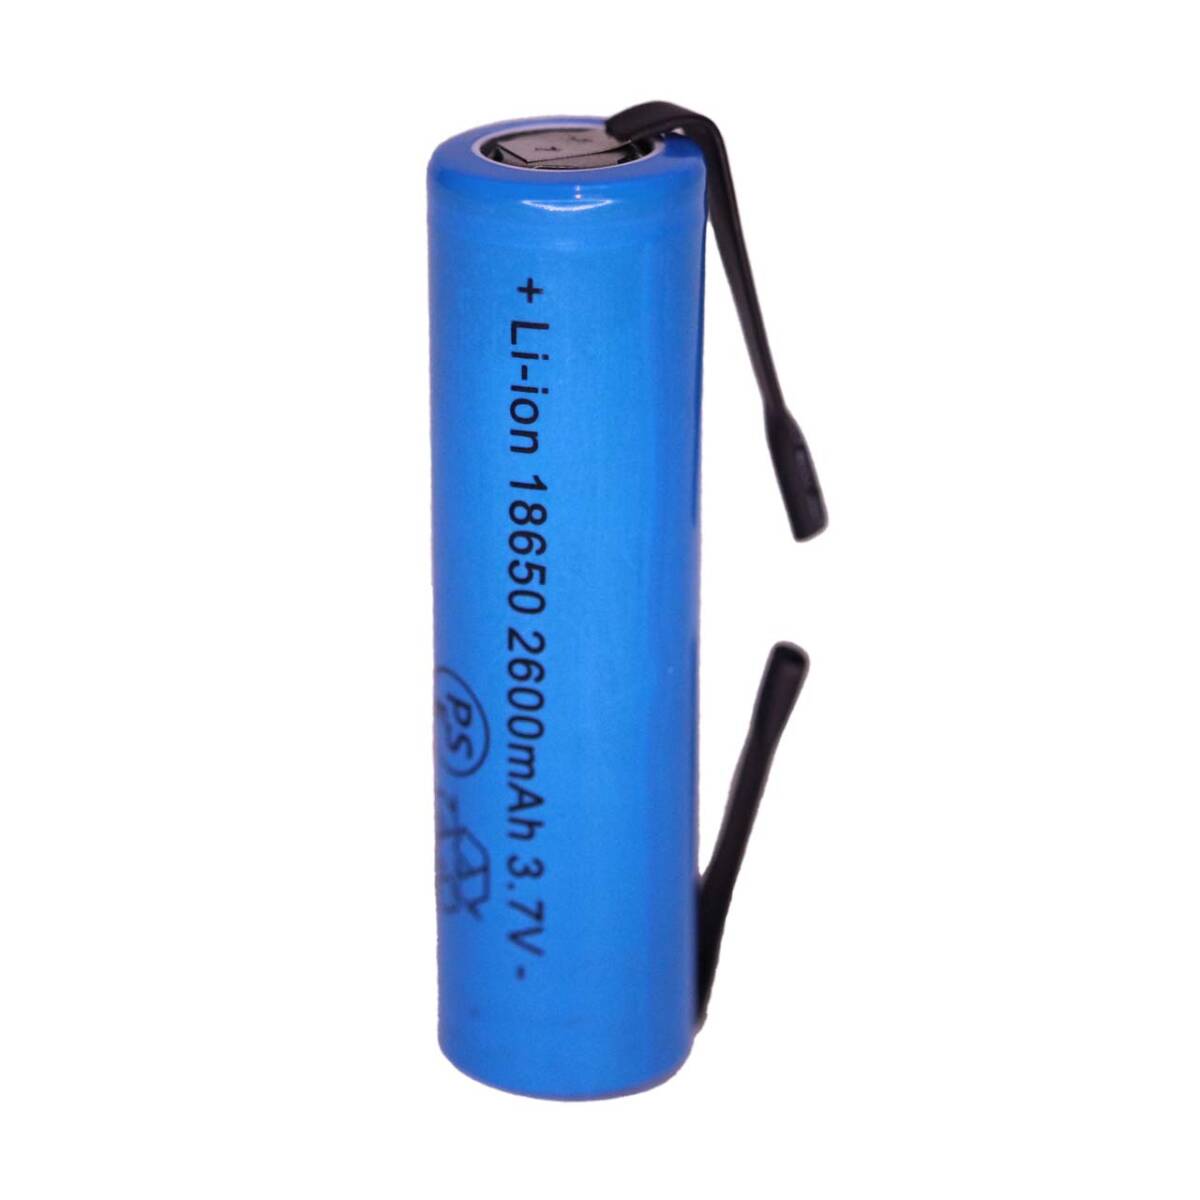 18650 リチウムイオン電池 リチウム電池 充電池 バッテリー リチウムイオン充電池 電池 フラットタイプ セル 自作 2600mah タブ付き 01_画像2